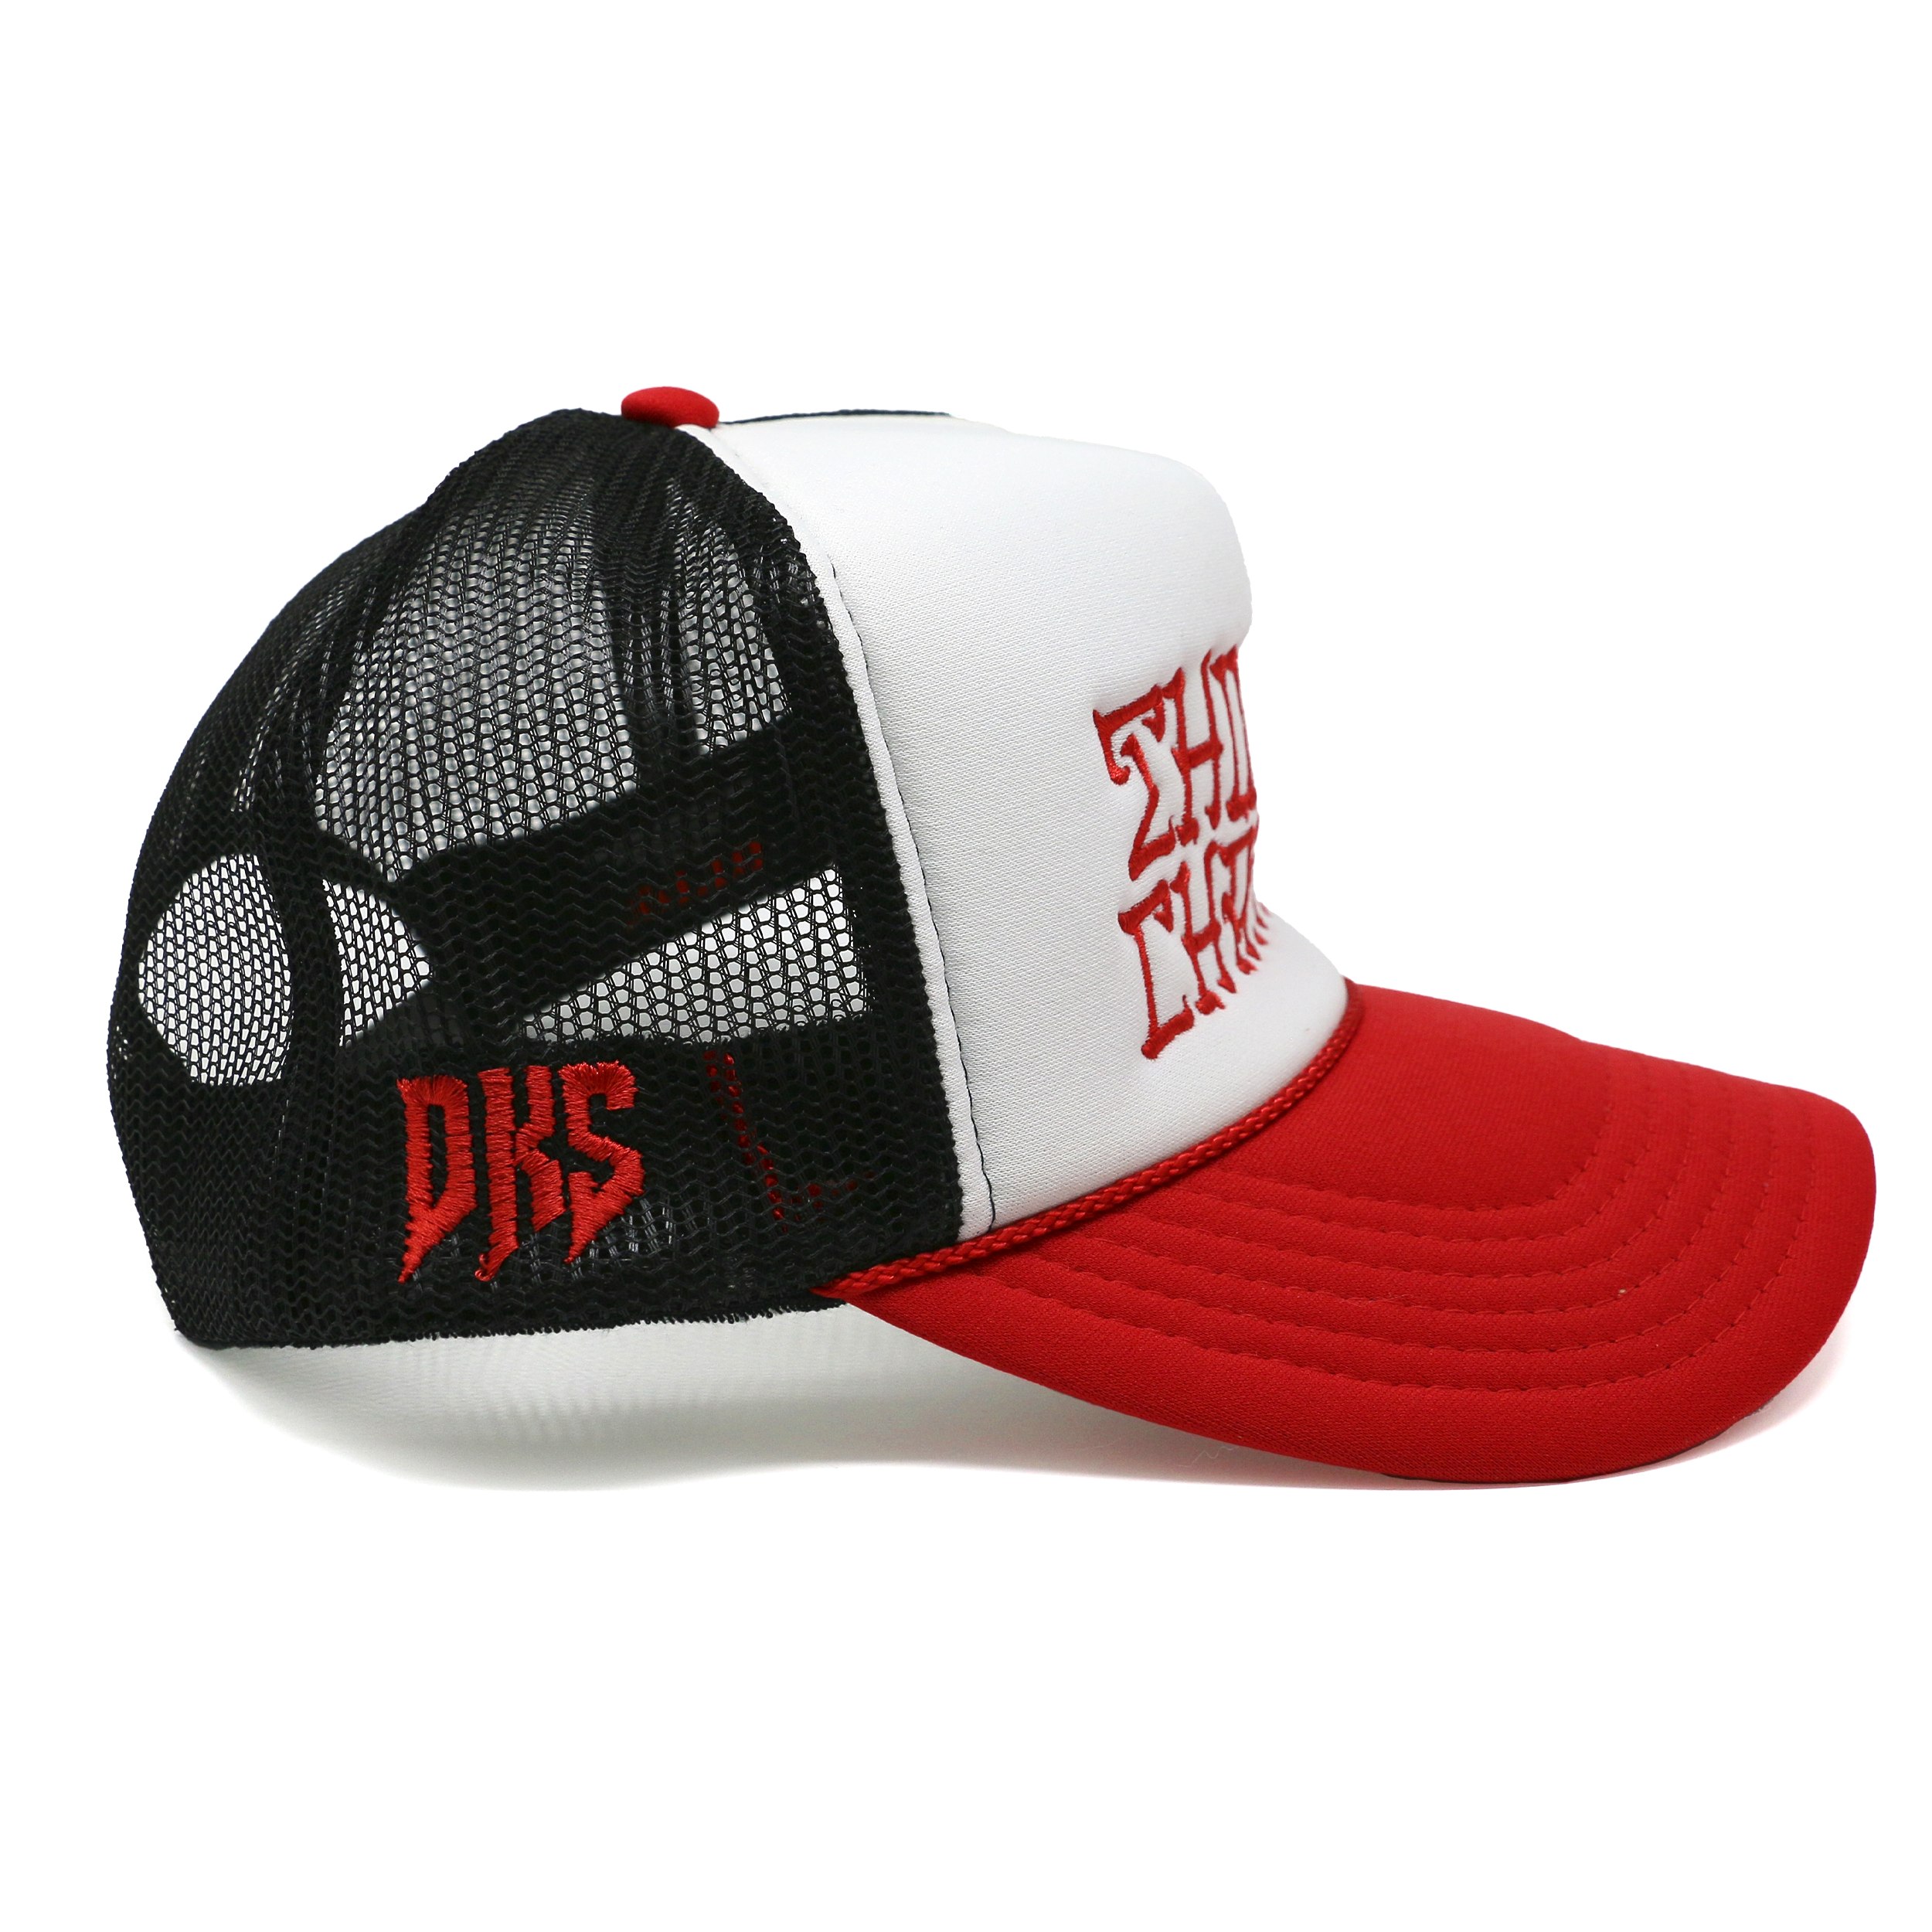 DKS "Things Change" Trucker Hat (Red/White/Black)